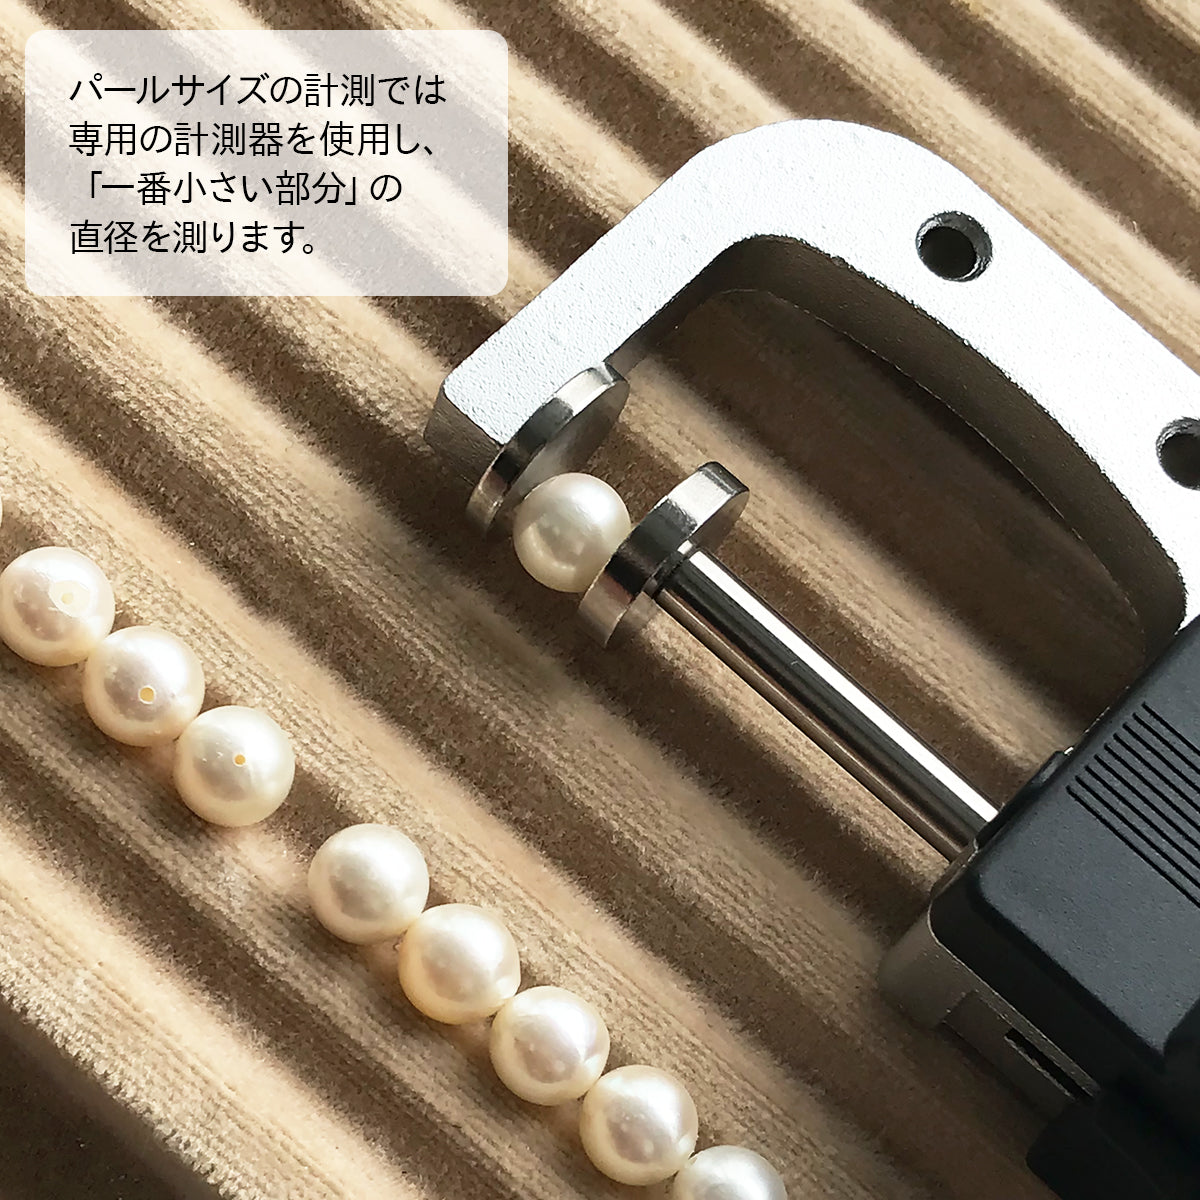 あこや真珠 念珠 数珠 ホワイト 7.0-7.5mm 本水晶 片手念珠 アコヤ 真珠 冠婚葬祭 桐箱付き (4348)